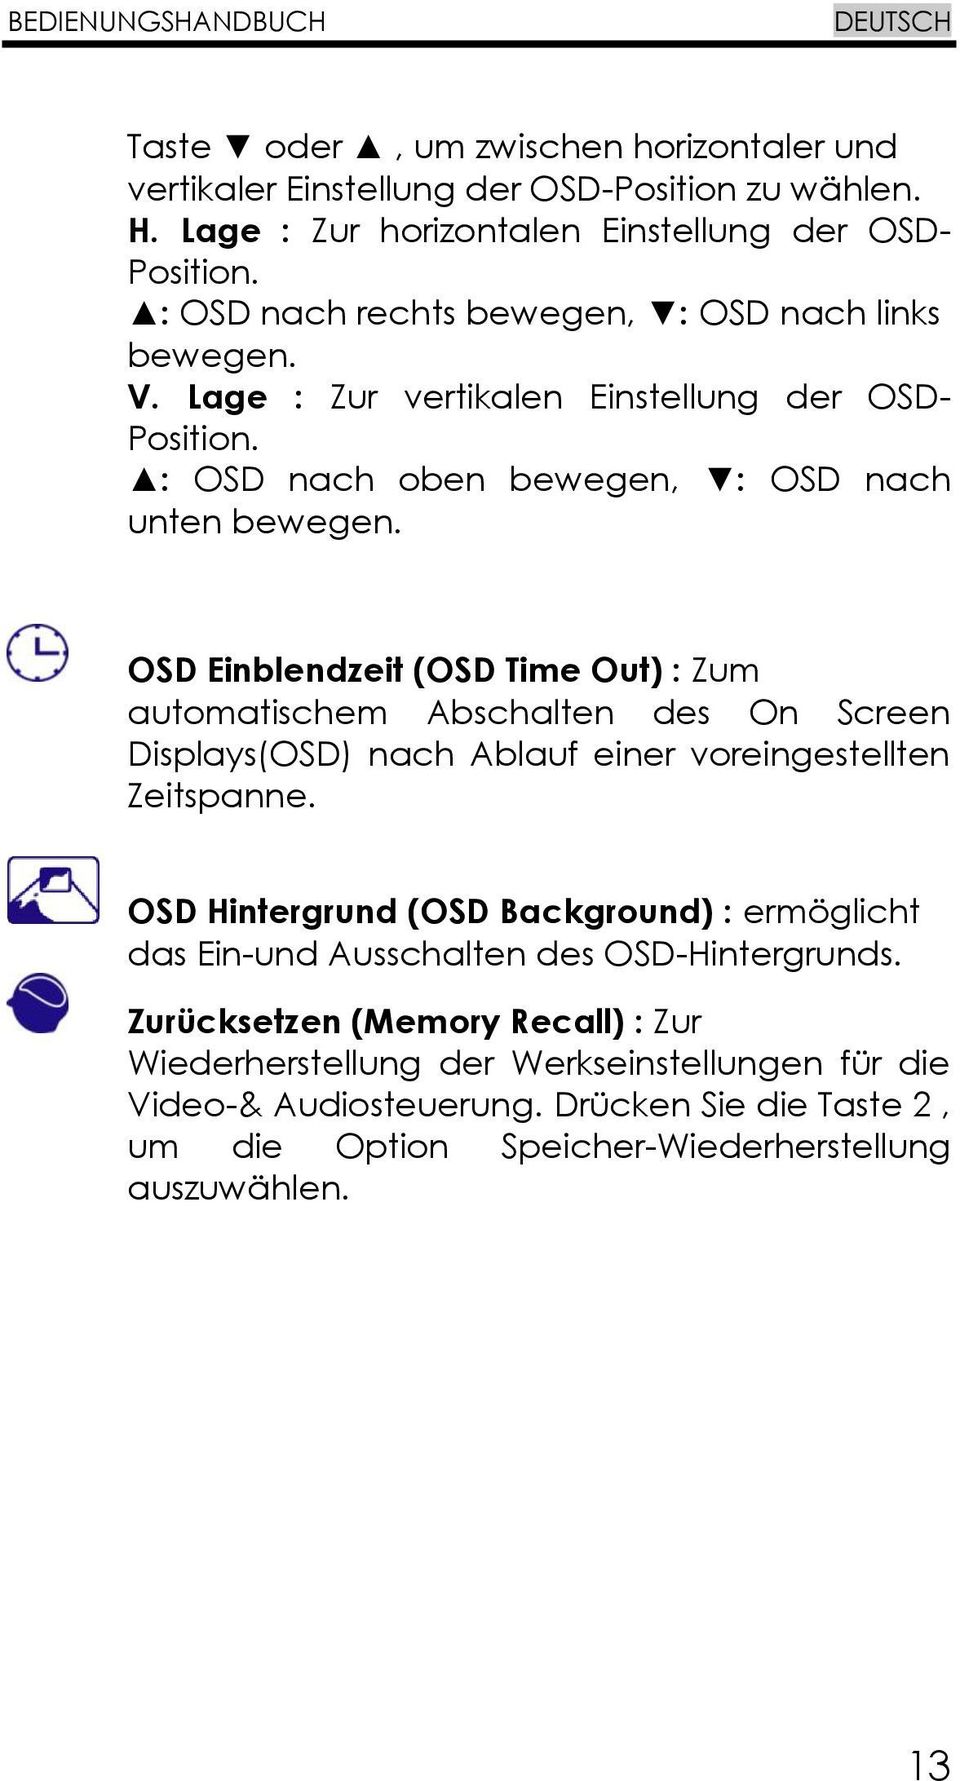 OSD Einblendzeit (OSD Time Out) : Zum automatischem Abschalten des On Screen Displays(OSD) nach Ablauf einer voreingestellten Zeitspanne.